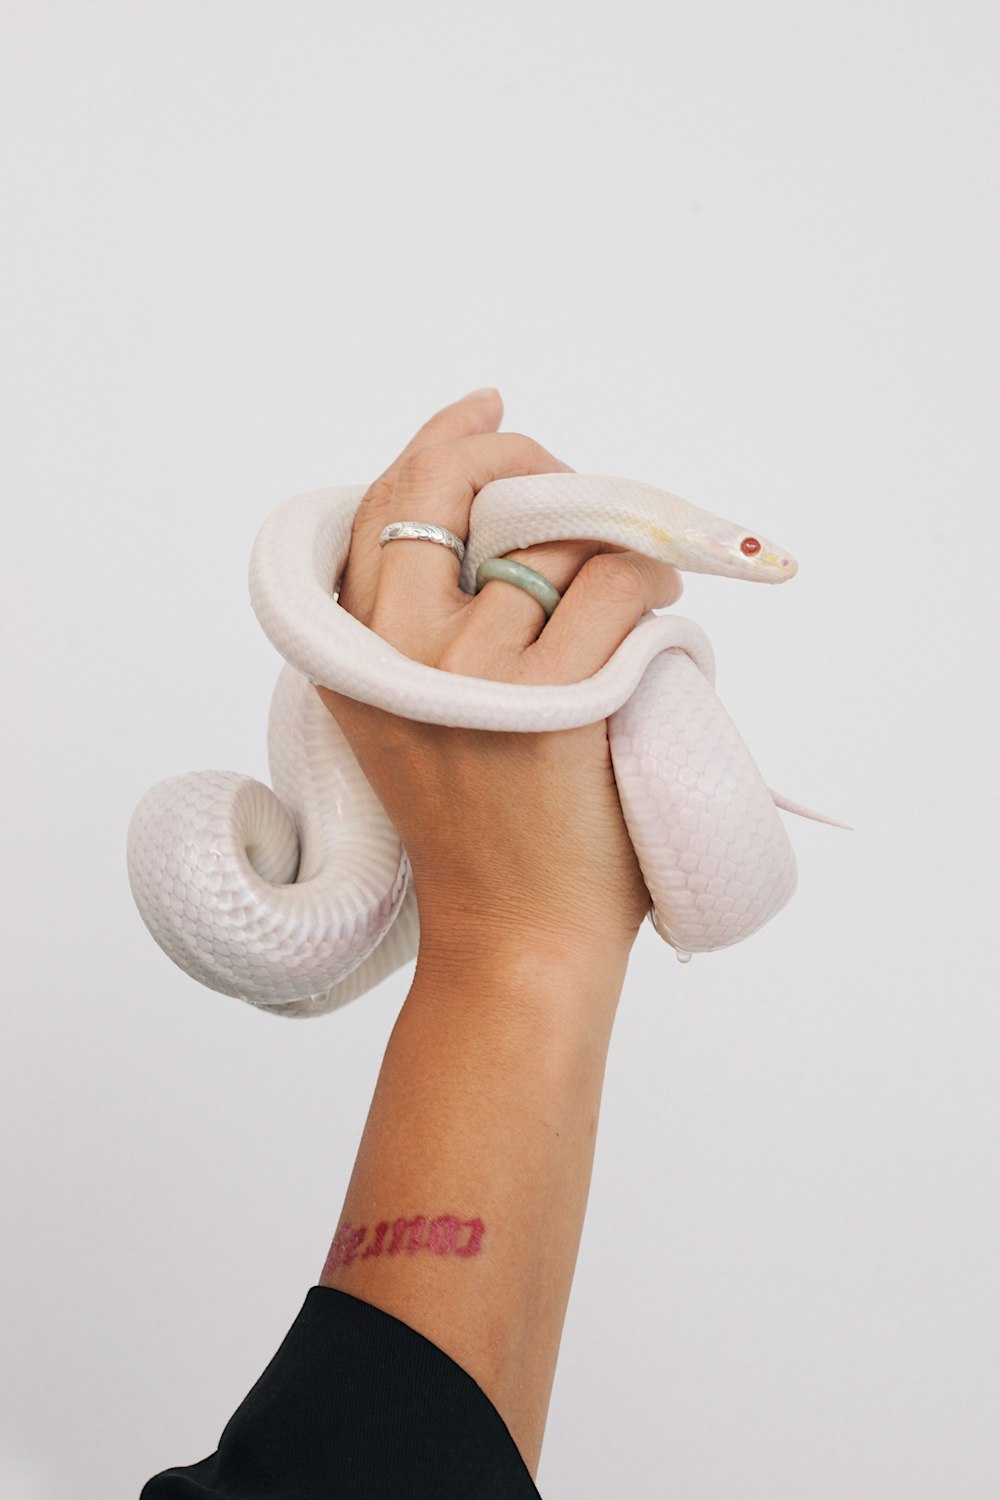 serpent albinos enroulé sur la main de la personne